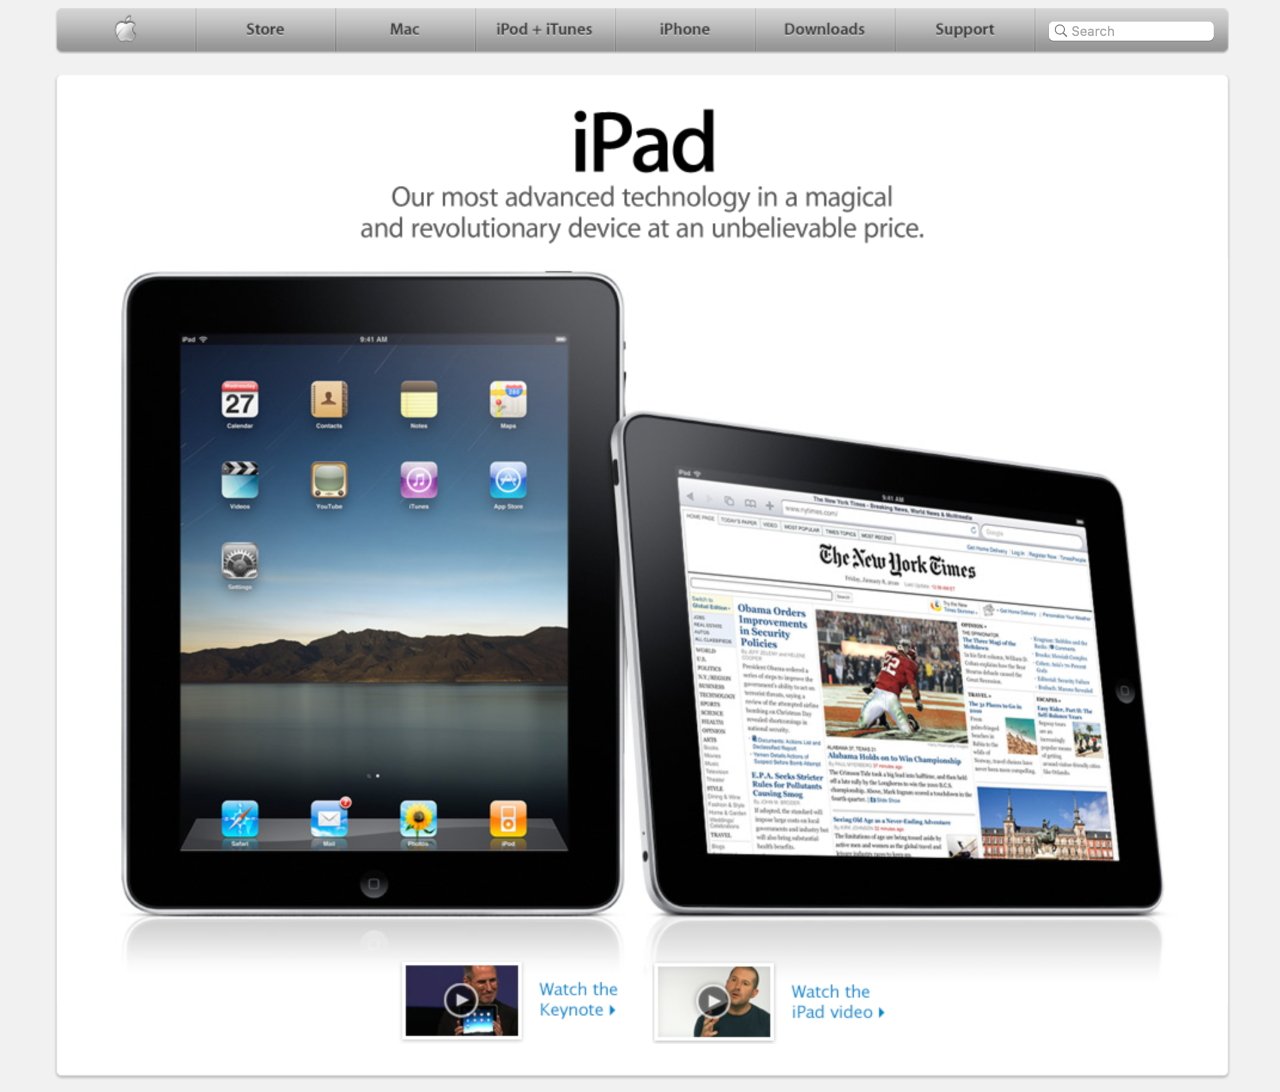 Представлены два Apple iPad: на одном отображается приложение «Календарь», а на другом — новостной веб-сайт.